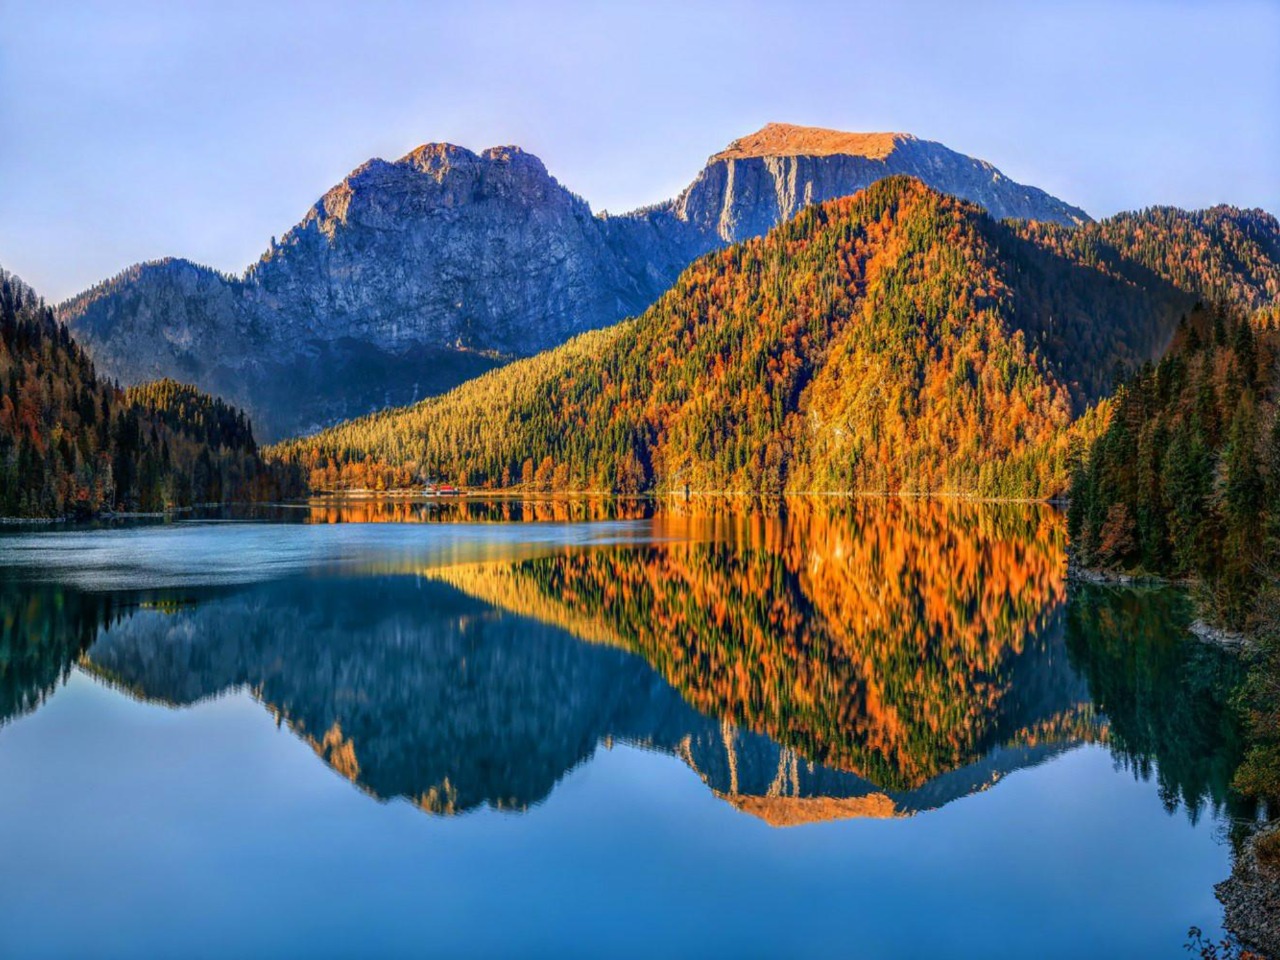 День, полный впечатлений: красота абхазских гор  | Цена 25000₽, отзывы, описание экскурсии